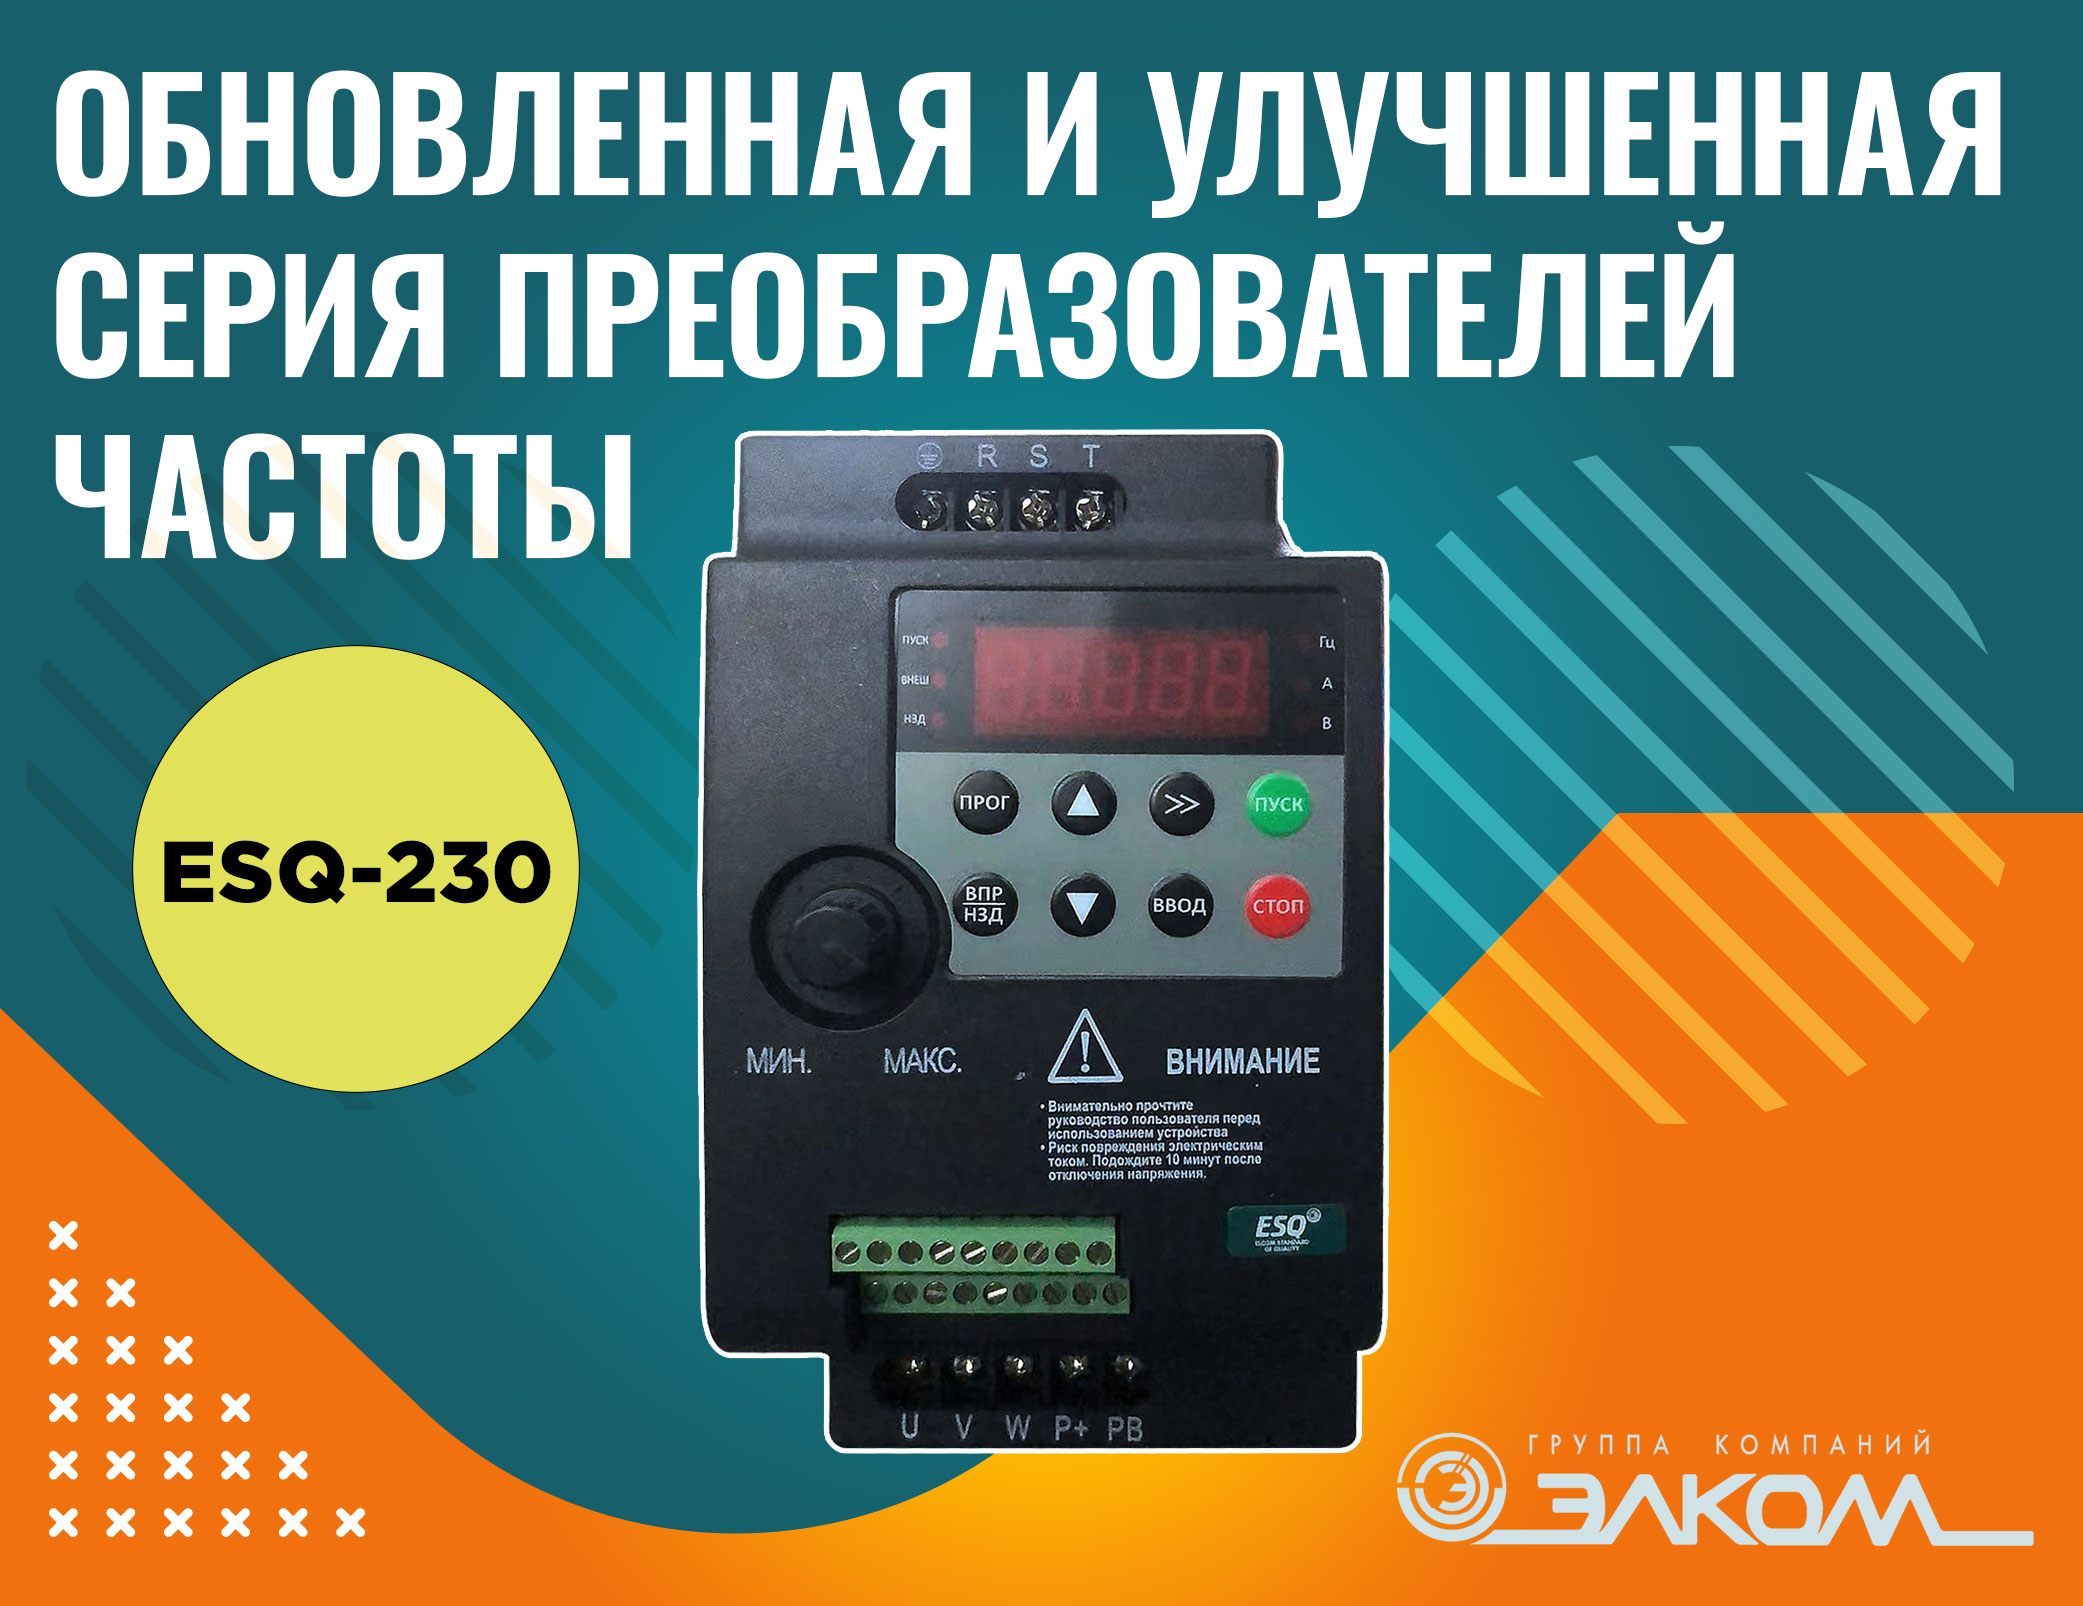 Обновленная и улучшенная серия преобразователей частоты ESQ-230